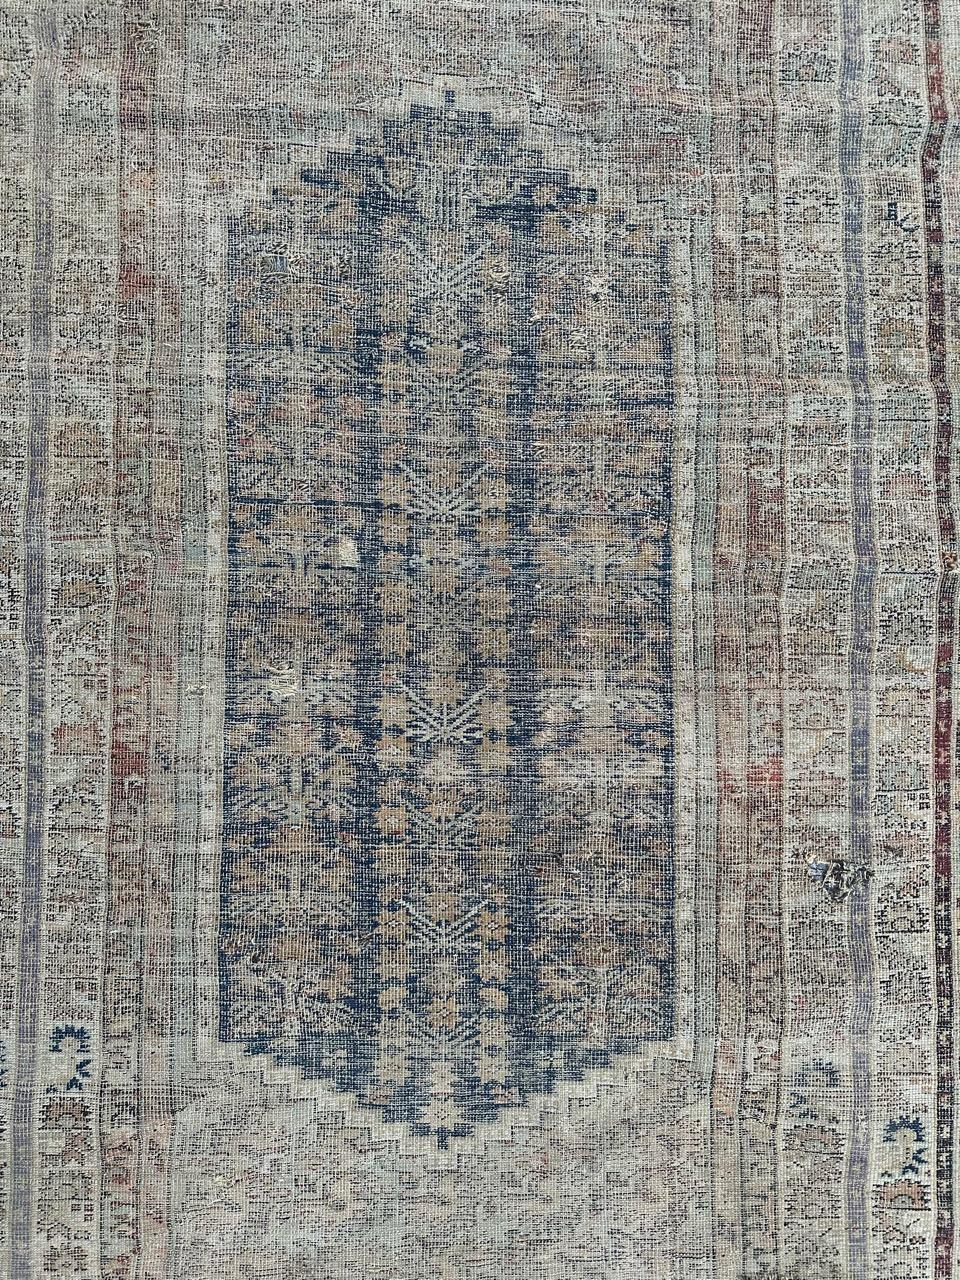 Exquisiter antiker türkischer Koula-Teppich aus dem 18. Jahrhundert, der in sorgfältiger Handarbeit mit Wolle auf Wolle gewebt wurde. Dieses außergewöhnlich seltene Stück weist zwar Alters- und Gebrauchsspuren auf, zeigt aber in der Mitte ein